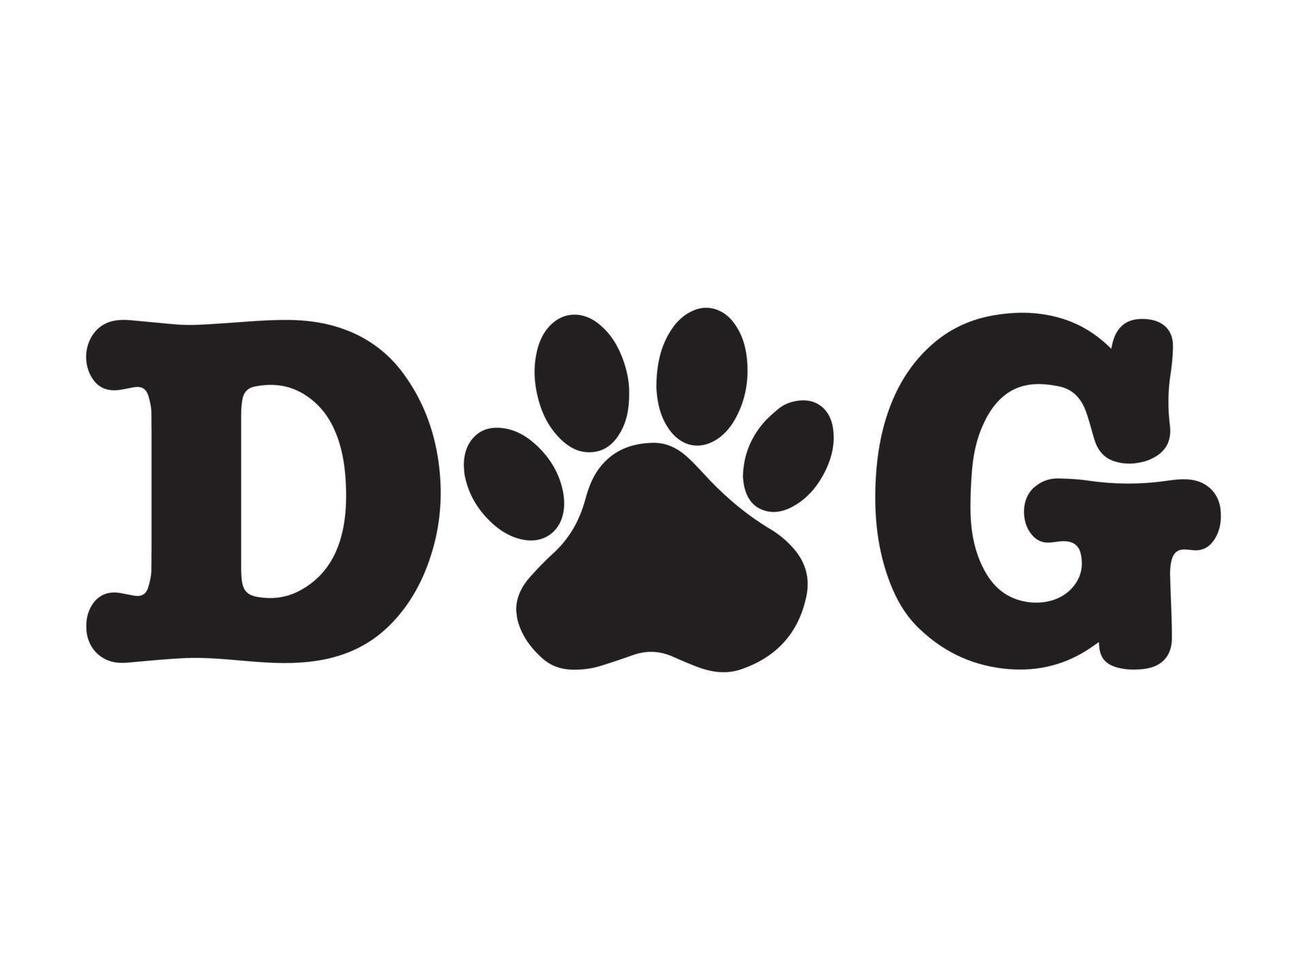 texte chien noir avec une empreinte de patte d'animal au lieu de la lettre o. empreinte d'animal de compagnie dans le mot chien. logo vectoriel minimaliste pour animaux de compagnie prêt pour le web et l'impression.